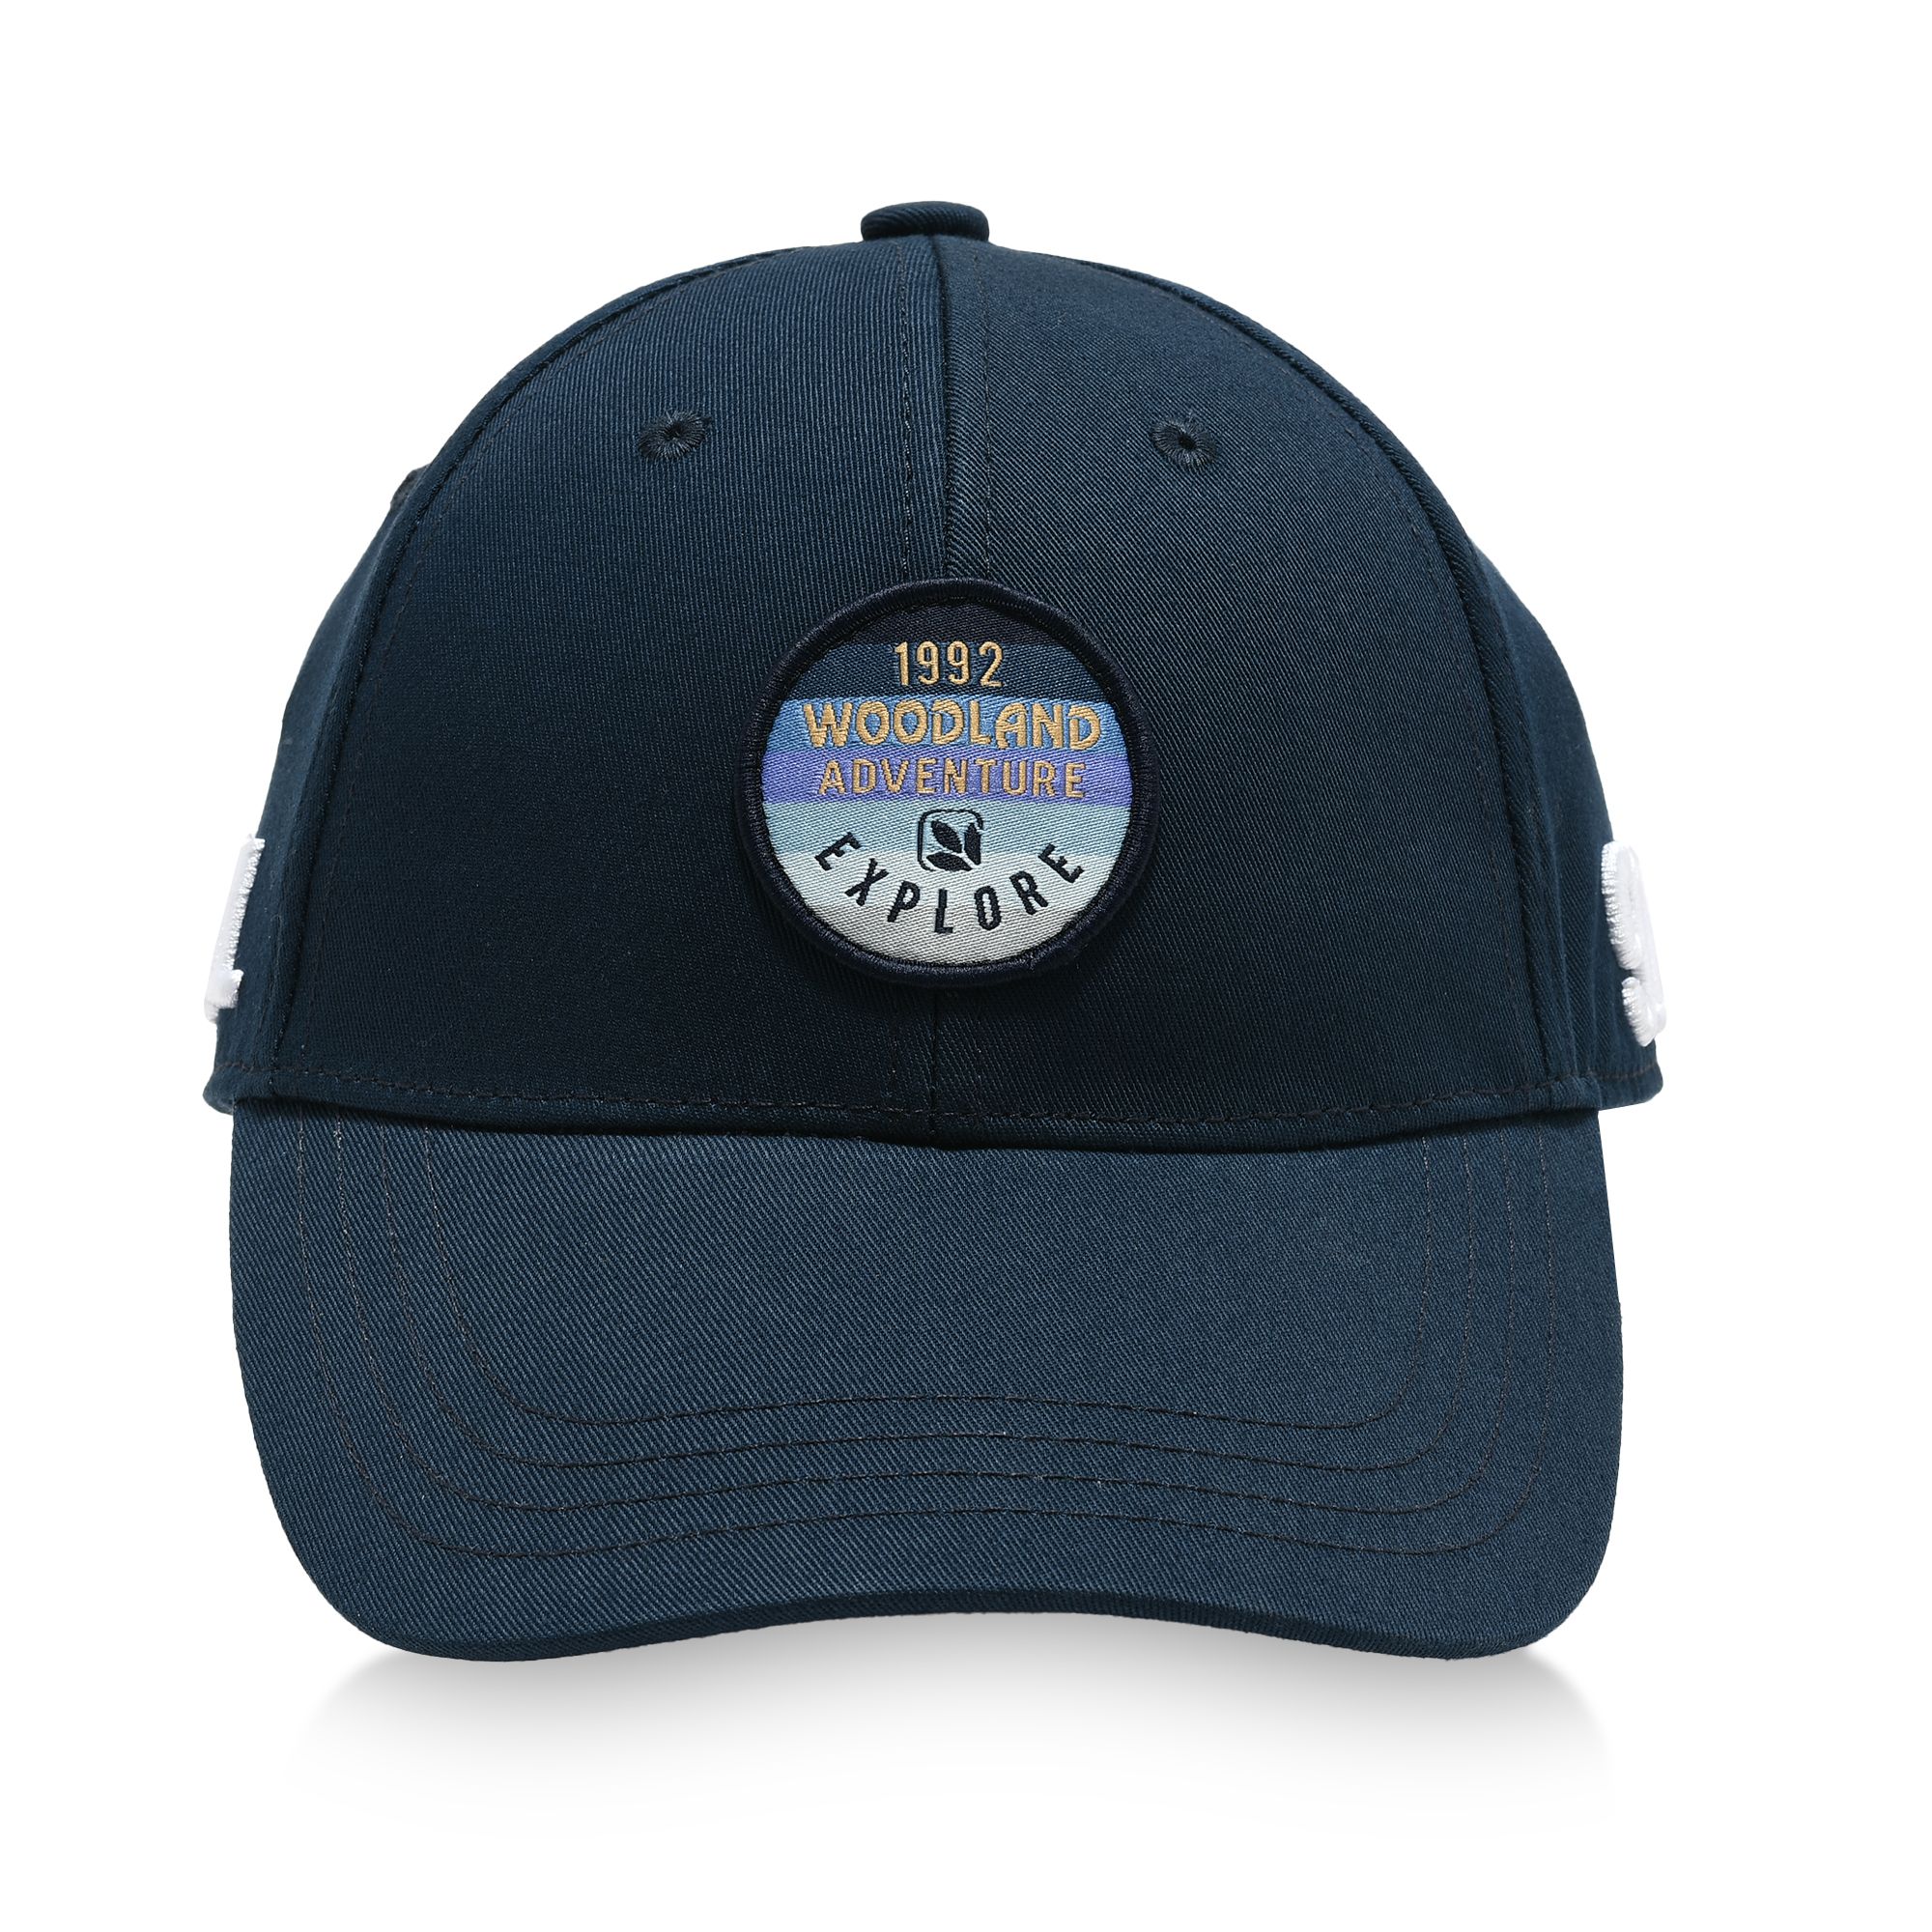 Navy cap